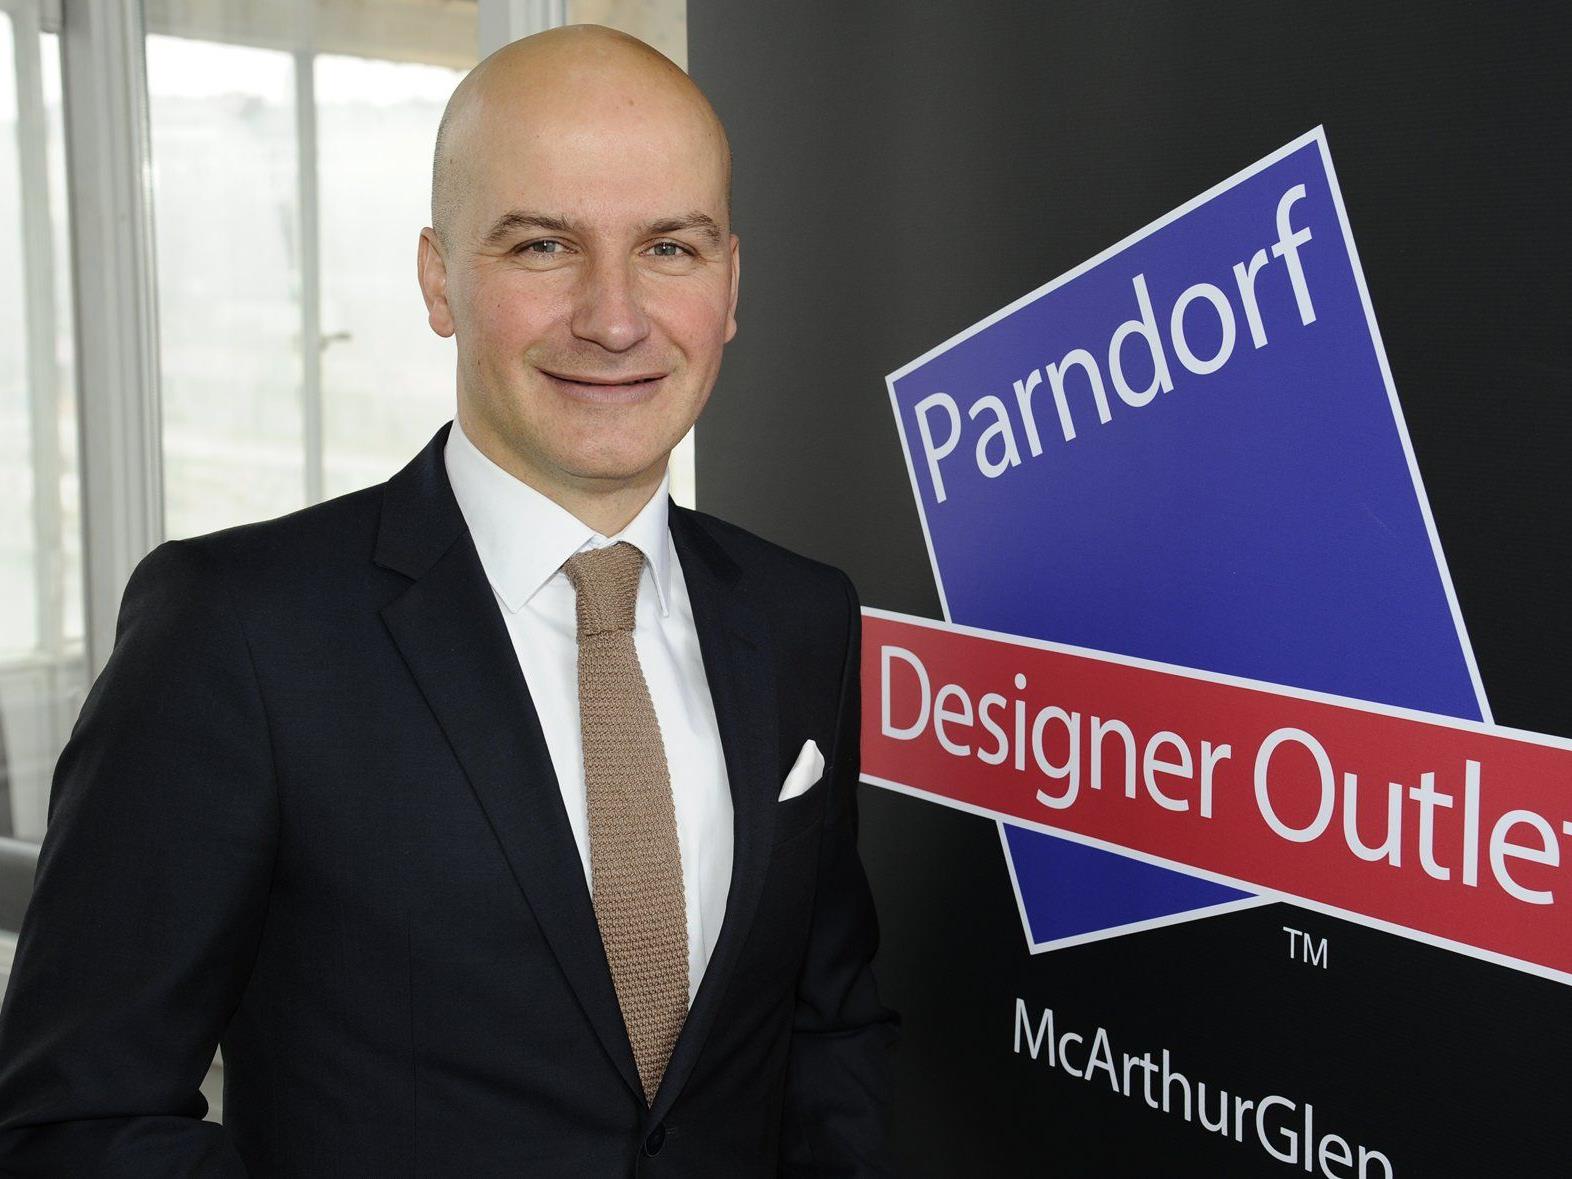 Mehr als fünf Millionen Besucher verzeichnete das Designer.outlet Parndorf 2016.